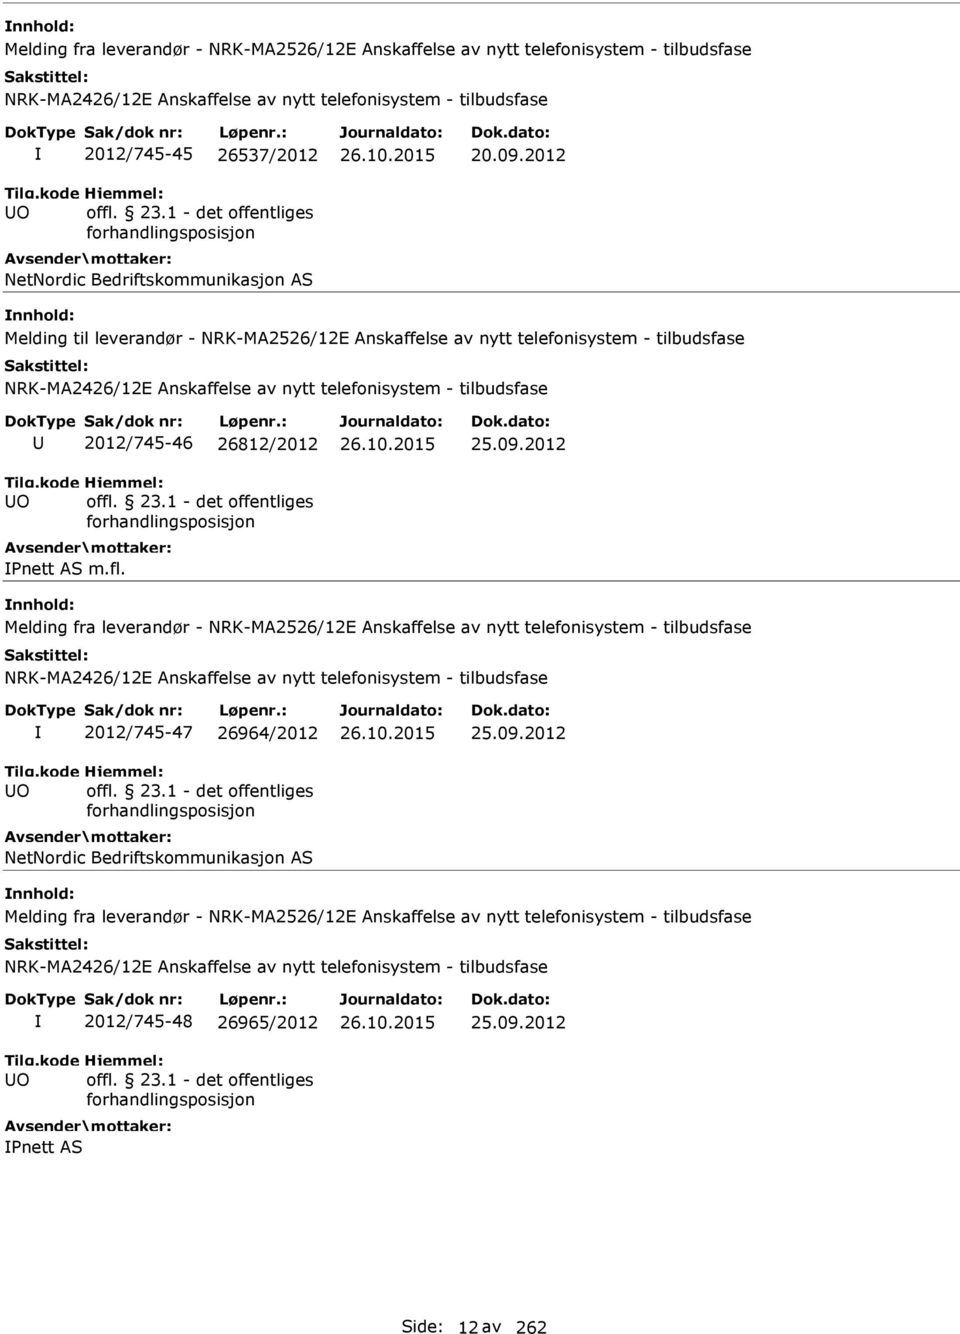 Melding fra leverandør - NRK-MA2526/12E Anskaffelse av nytt telefonisystem - tilbudsfase O 2012/745-47 26964/2012 NetNordic Bedriftskommunikasjon AS 25.